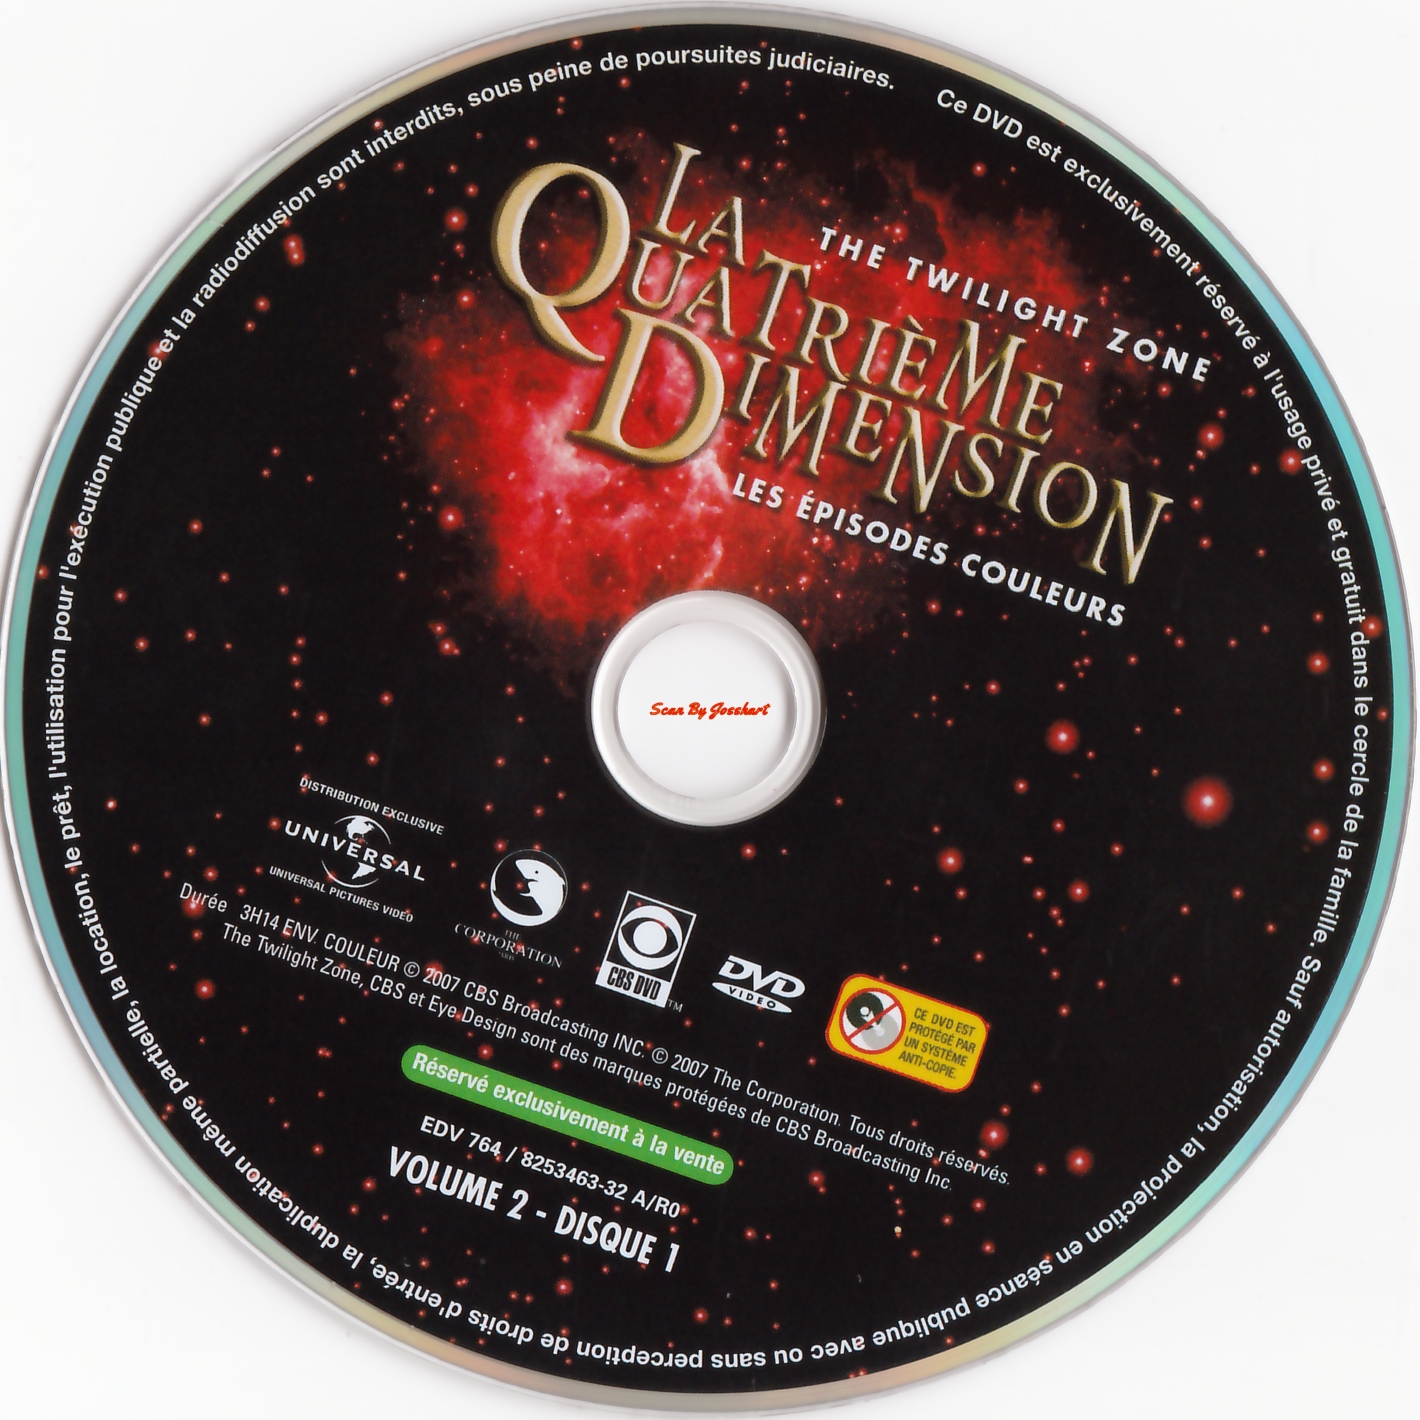 La quatrime dimension - Episodes couleurs vol 2 DISC 1